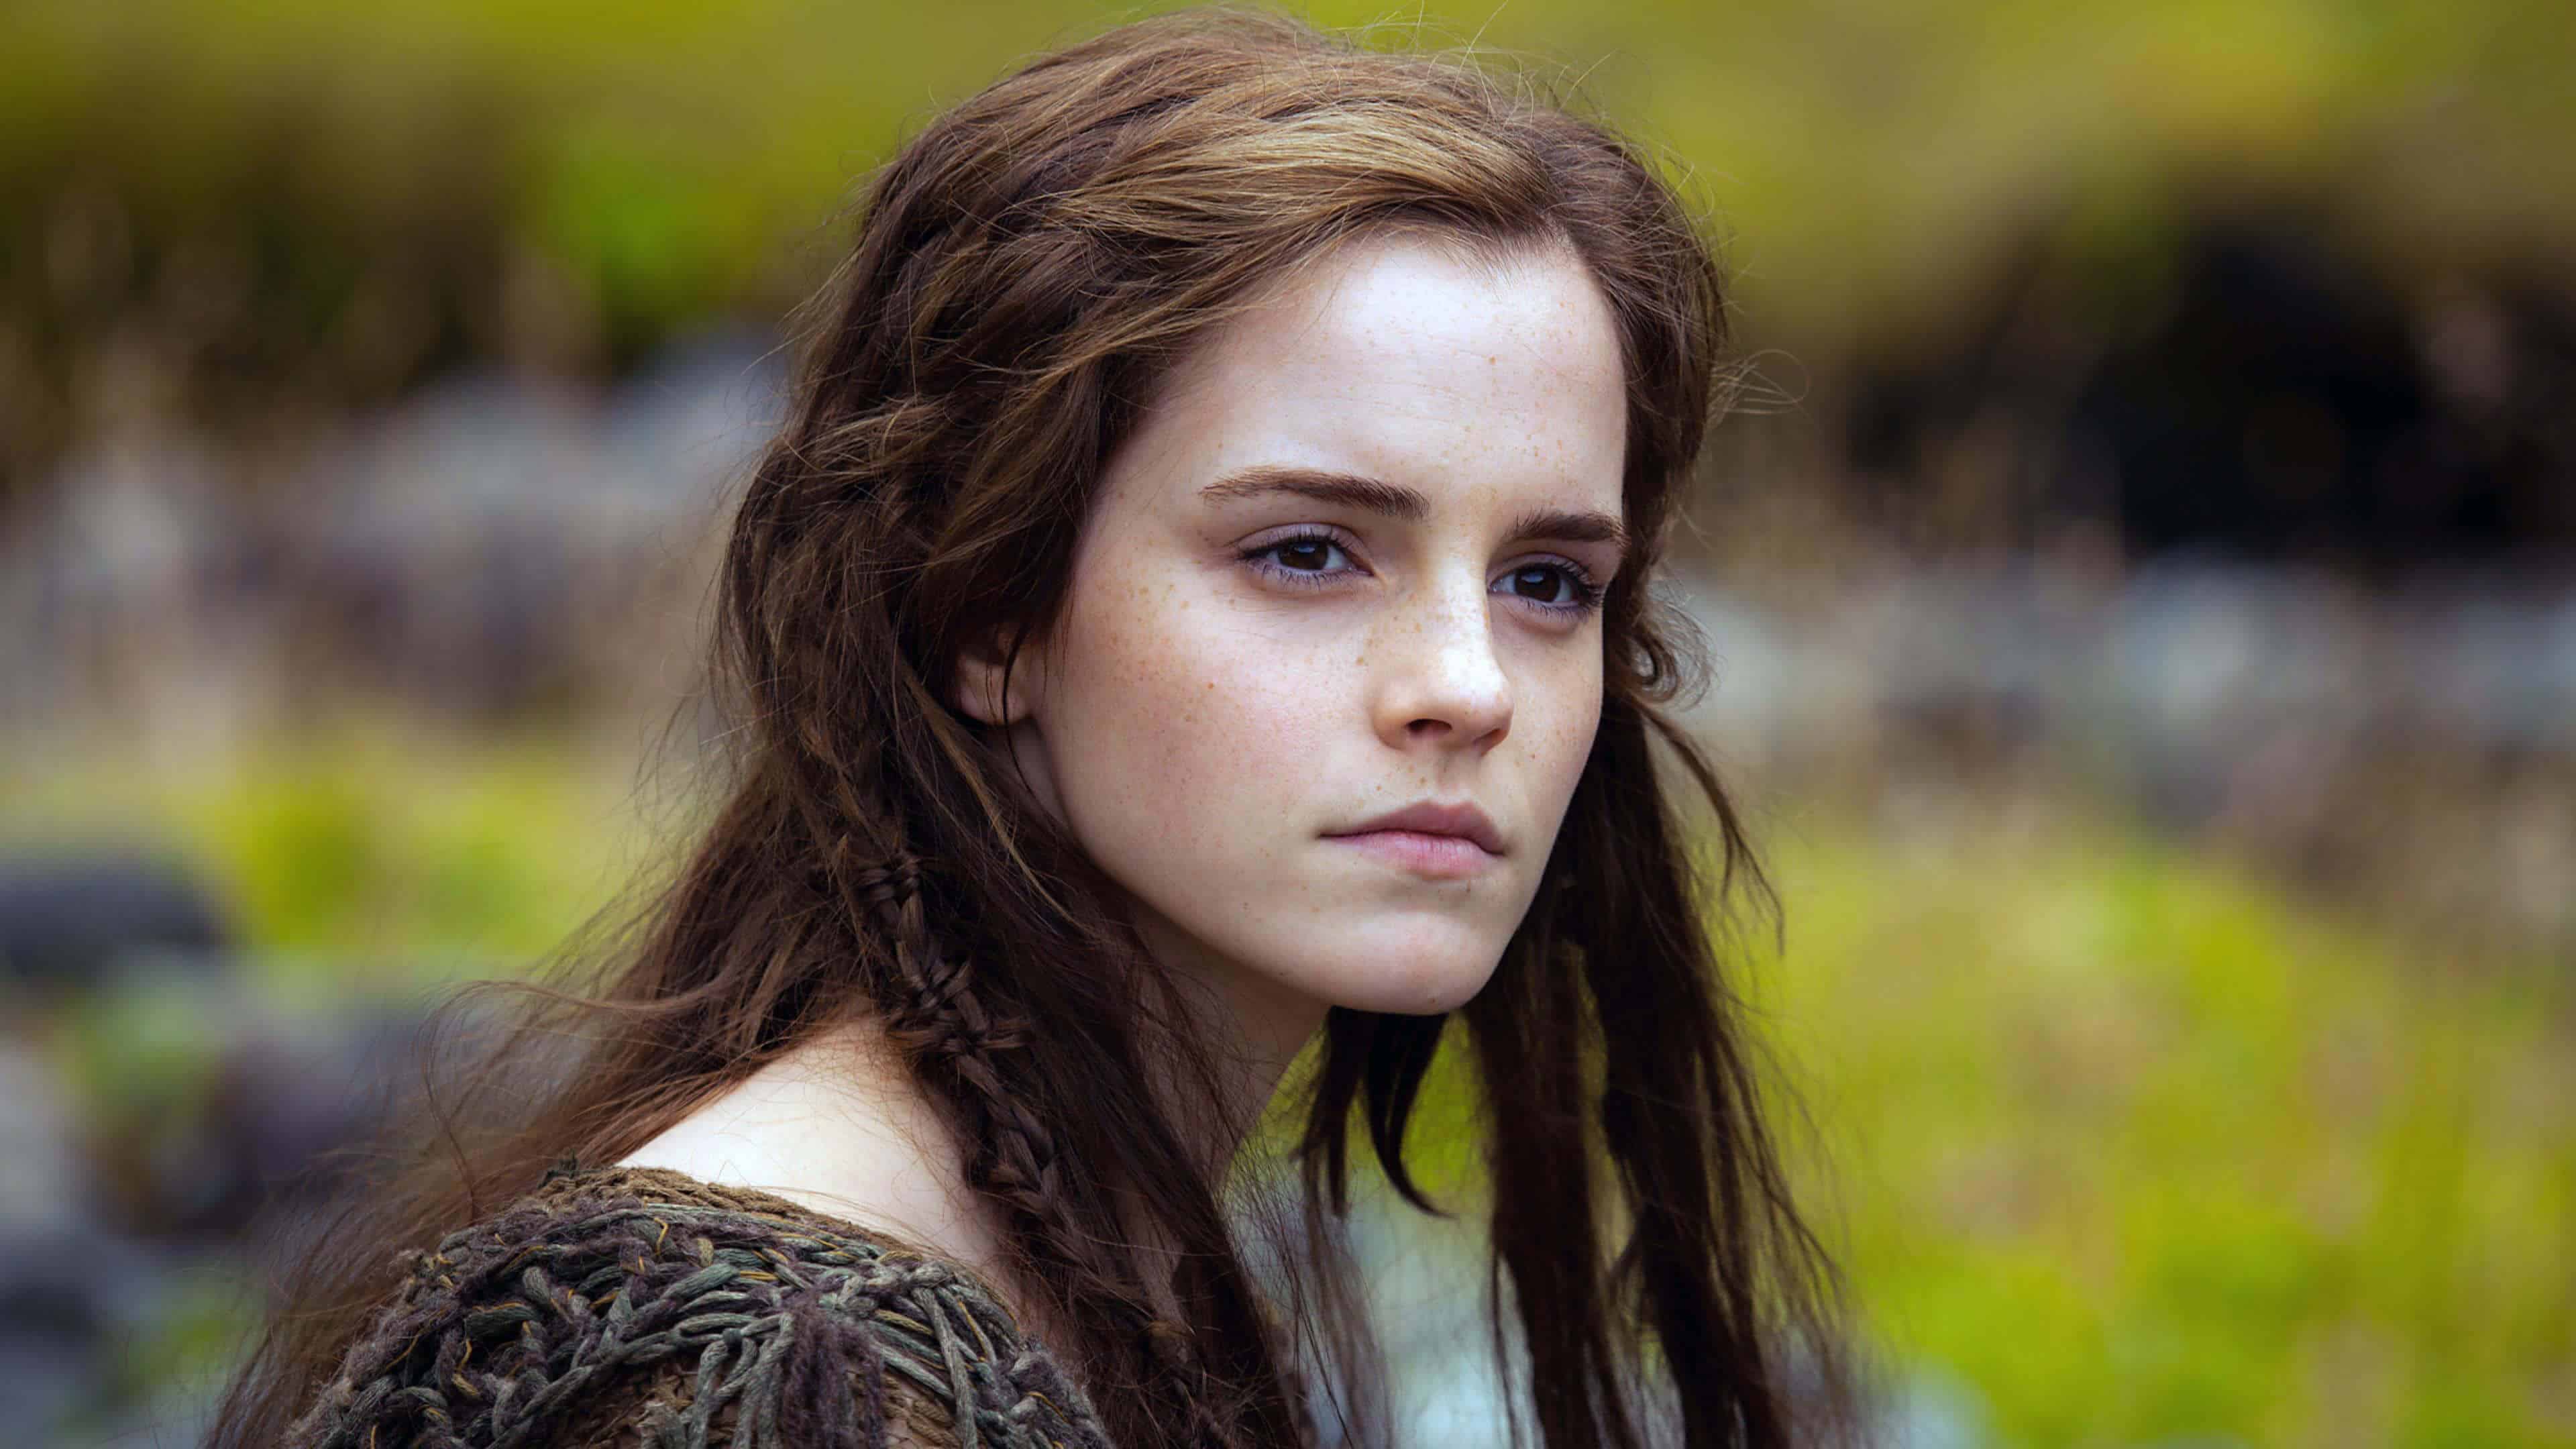 Noah Emma Watson UHD 4K fondo de pantalla | Pixelz